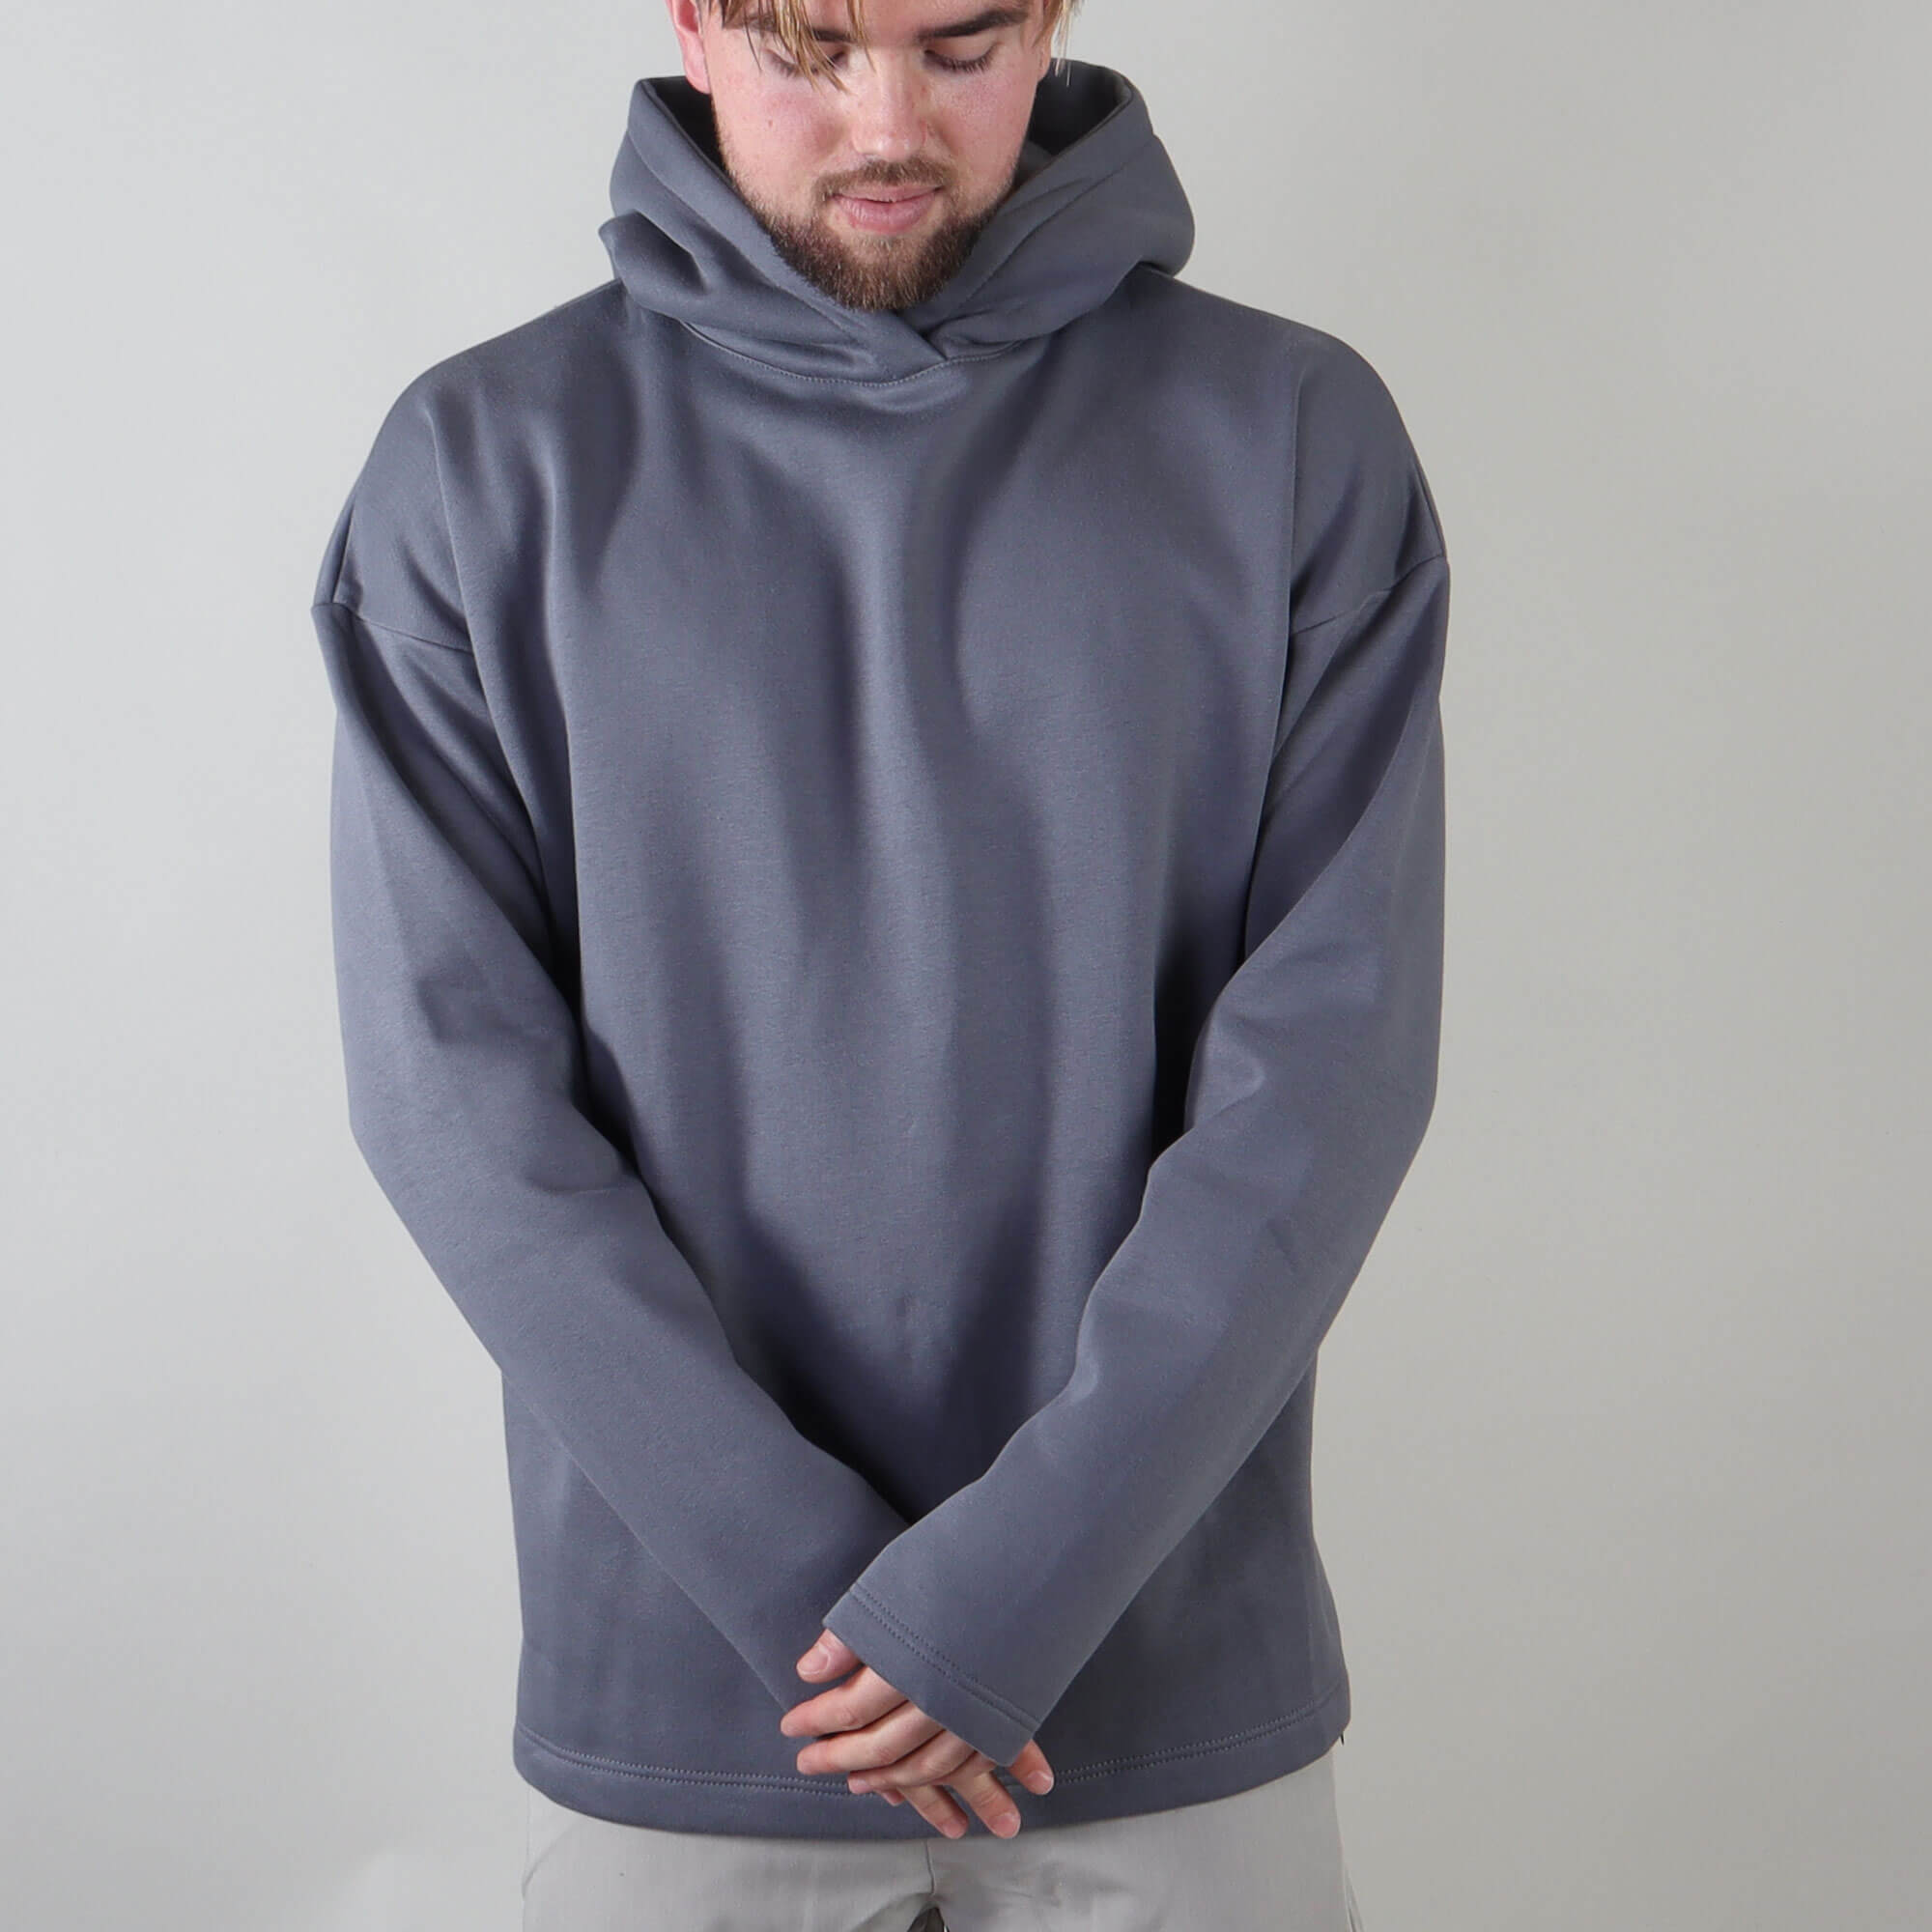 PRJCT hoodie grey